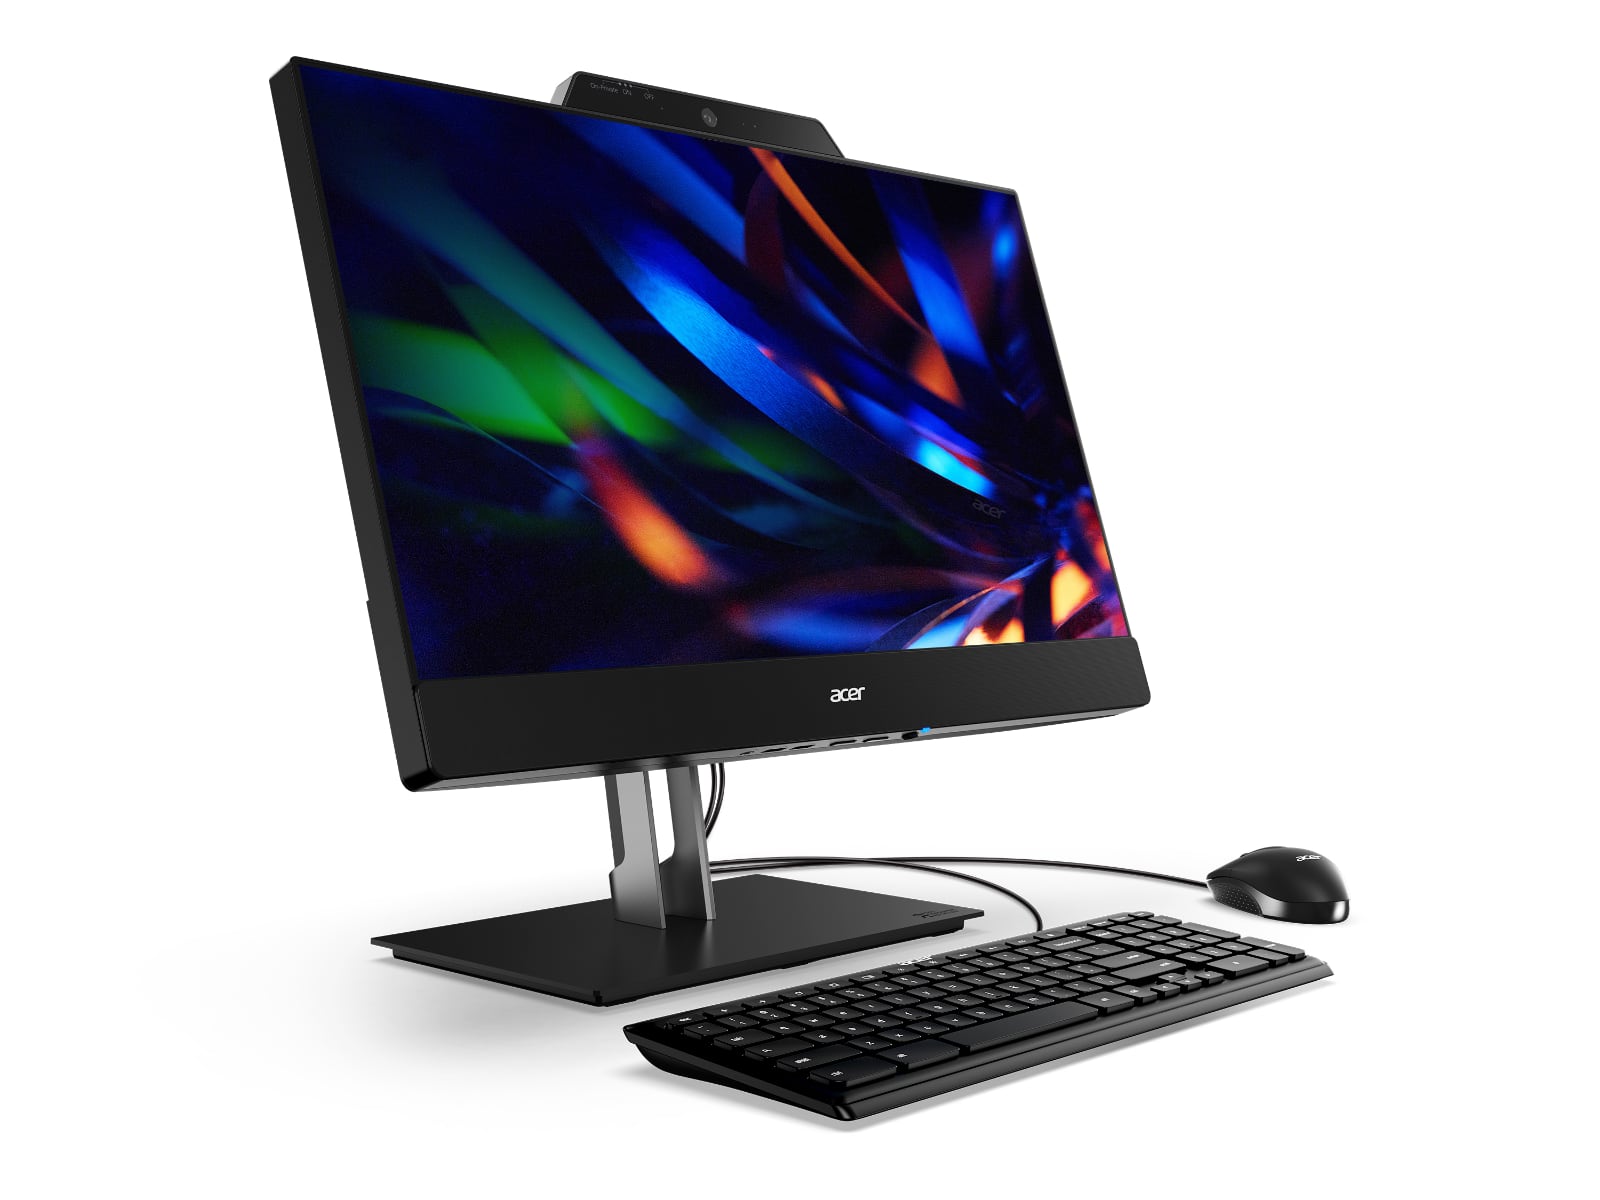 Acer añade un monitor FHD 1080p de 24 pulgadas al nuevo Chromebox CXI5 y crea la solución Add-In-One 24 por 610 dólares-2